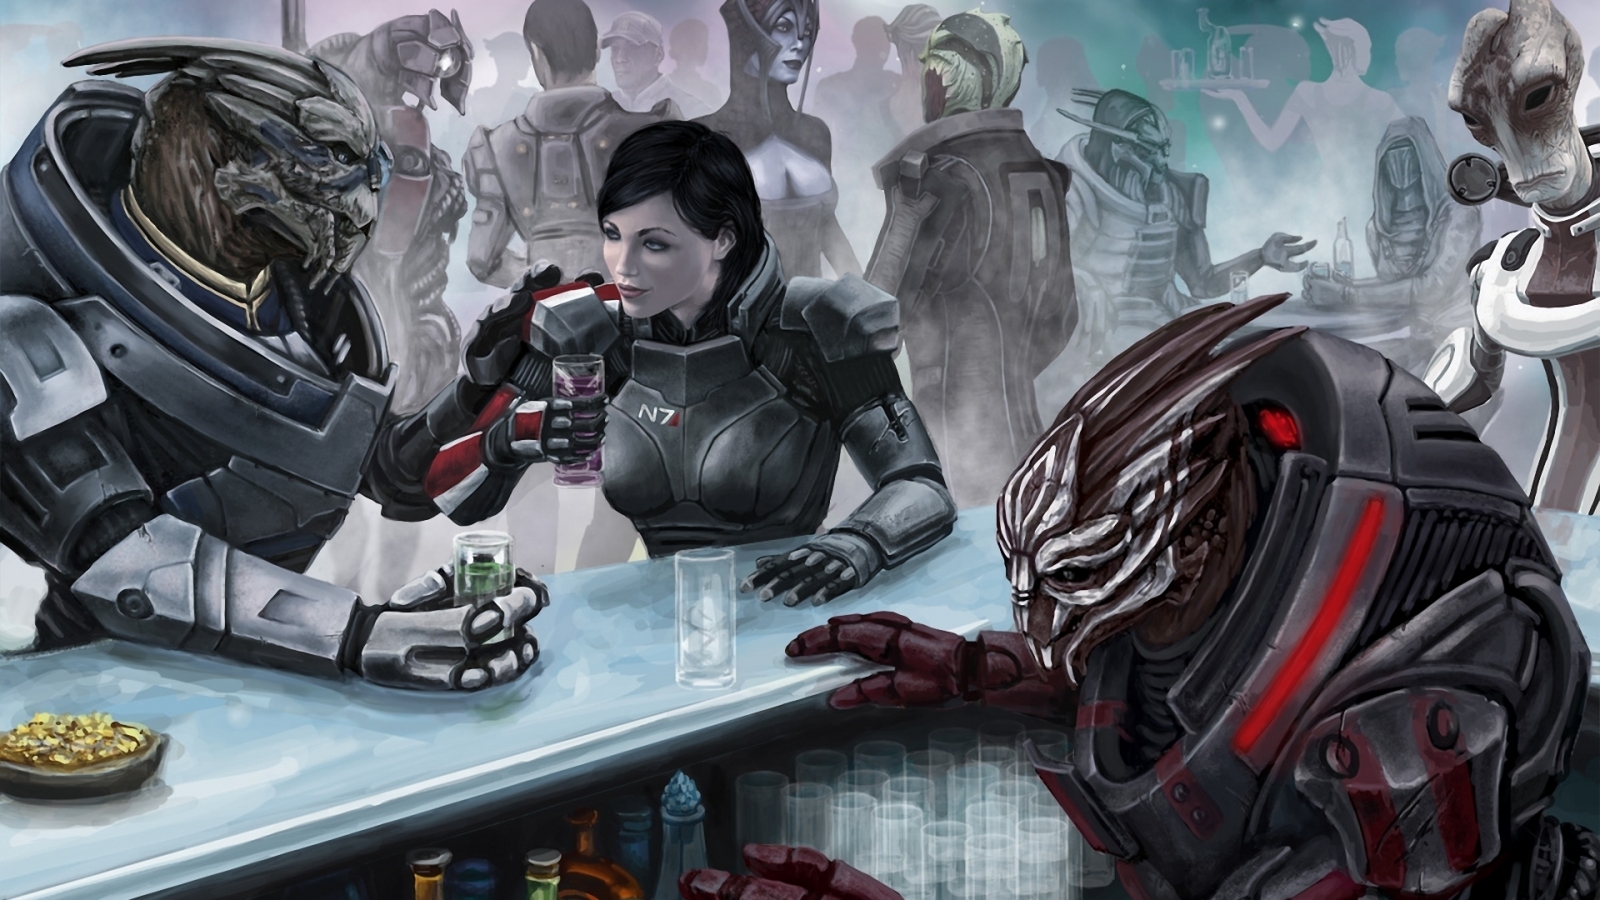 Mass Effect 3 Captain Shepherd for 1600 x 900 HDTV resolution